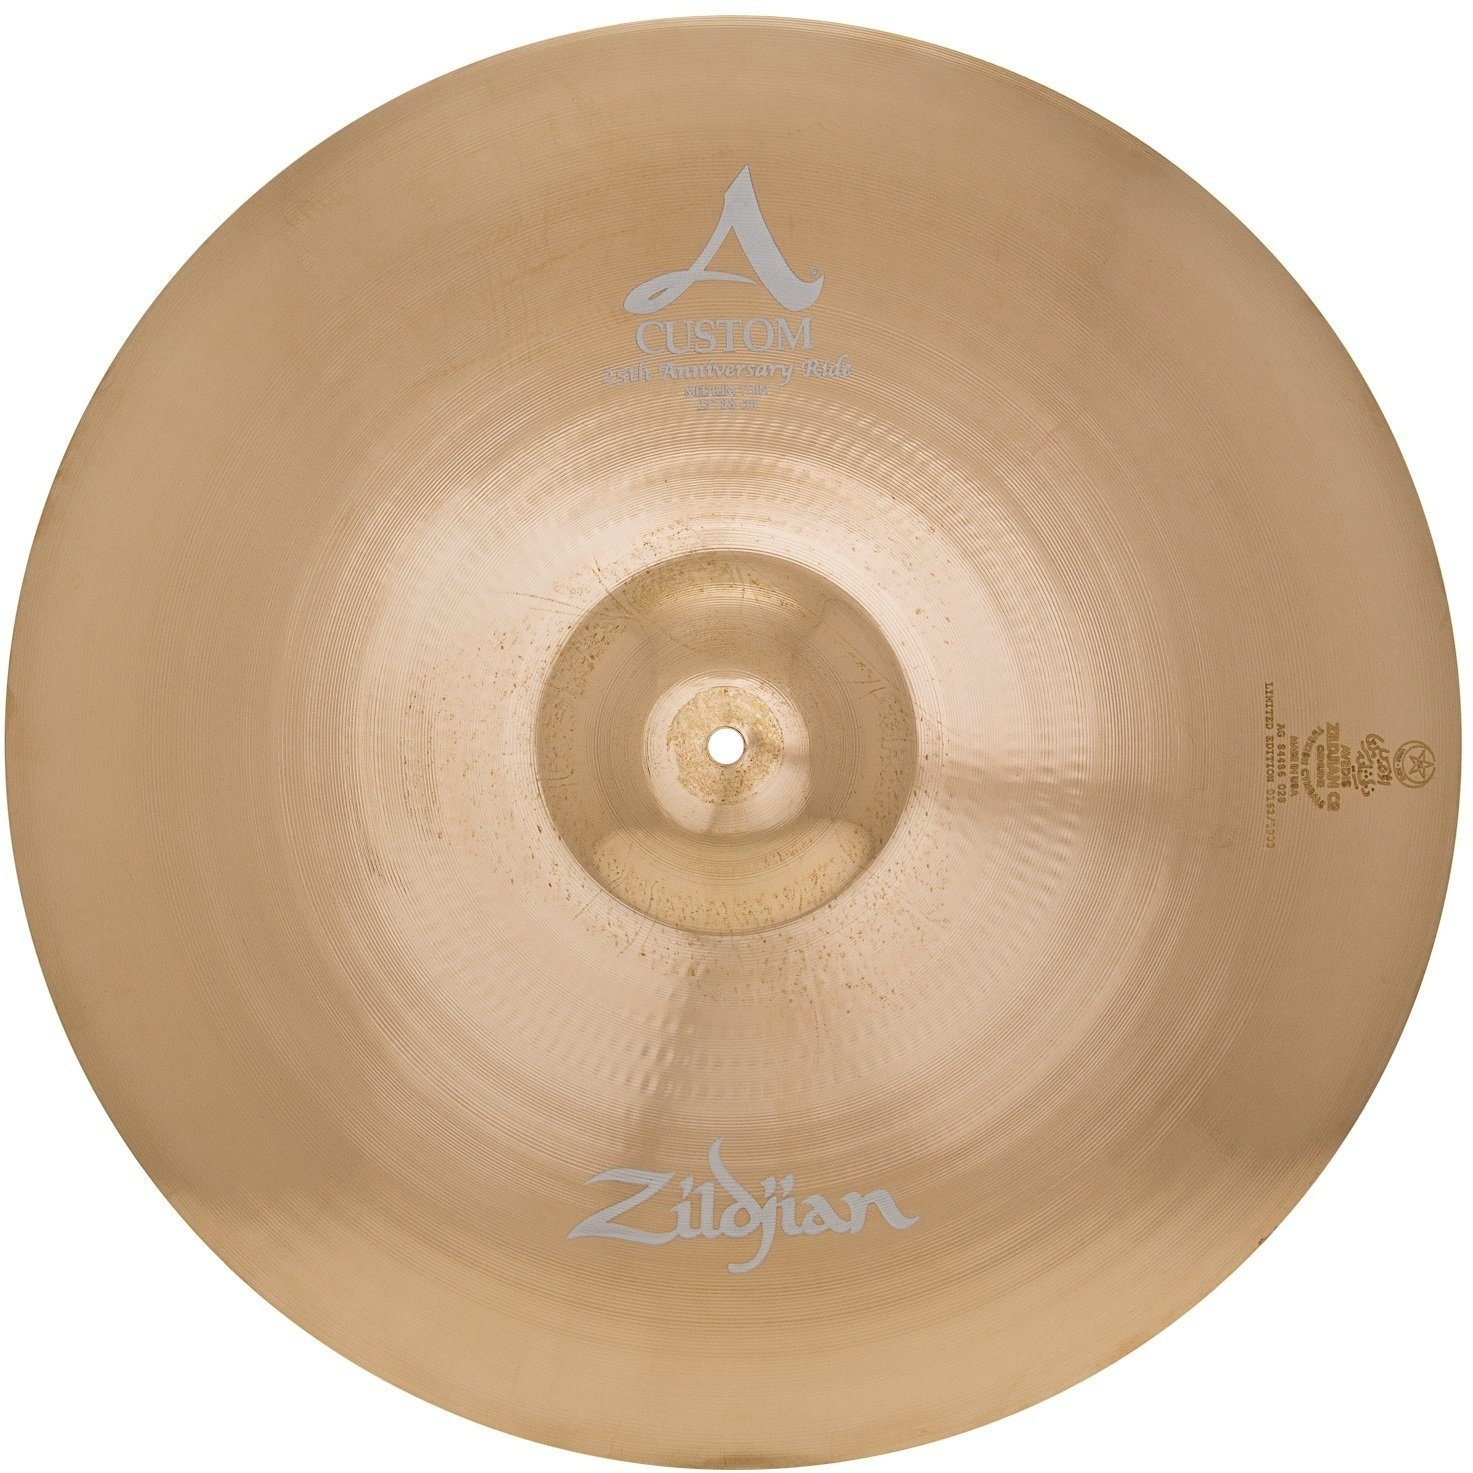 Zildjian ACP25 A Custom 25th Anniversary Limited Edition Ride činel 23" Zildjian